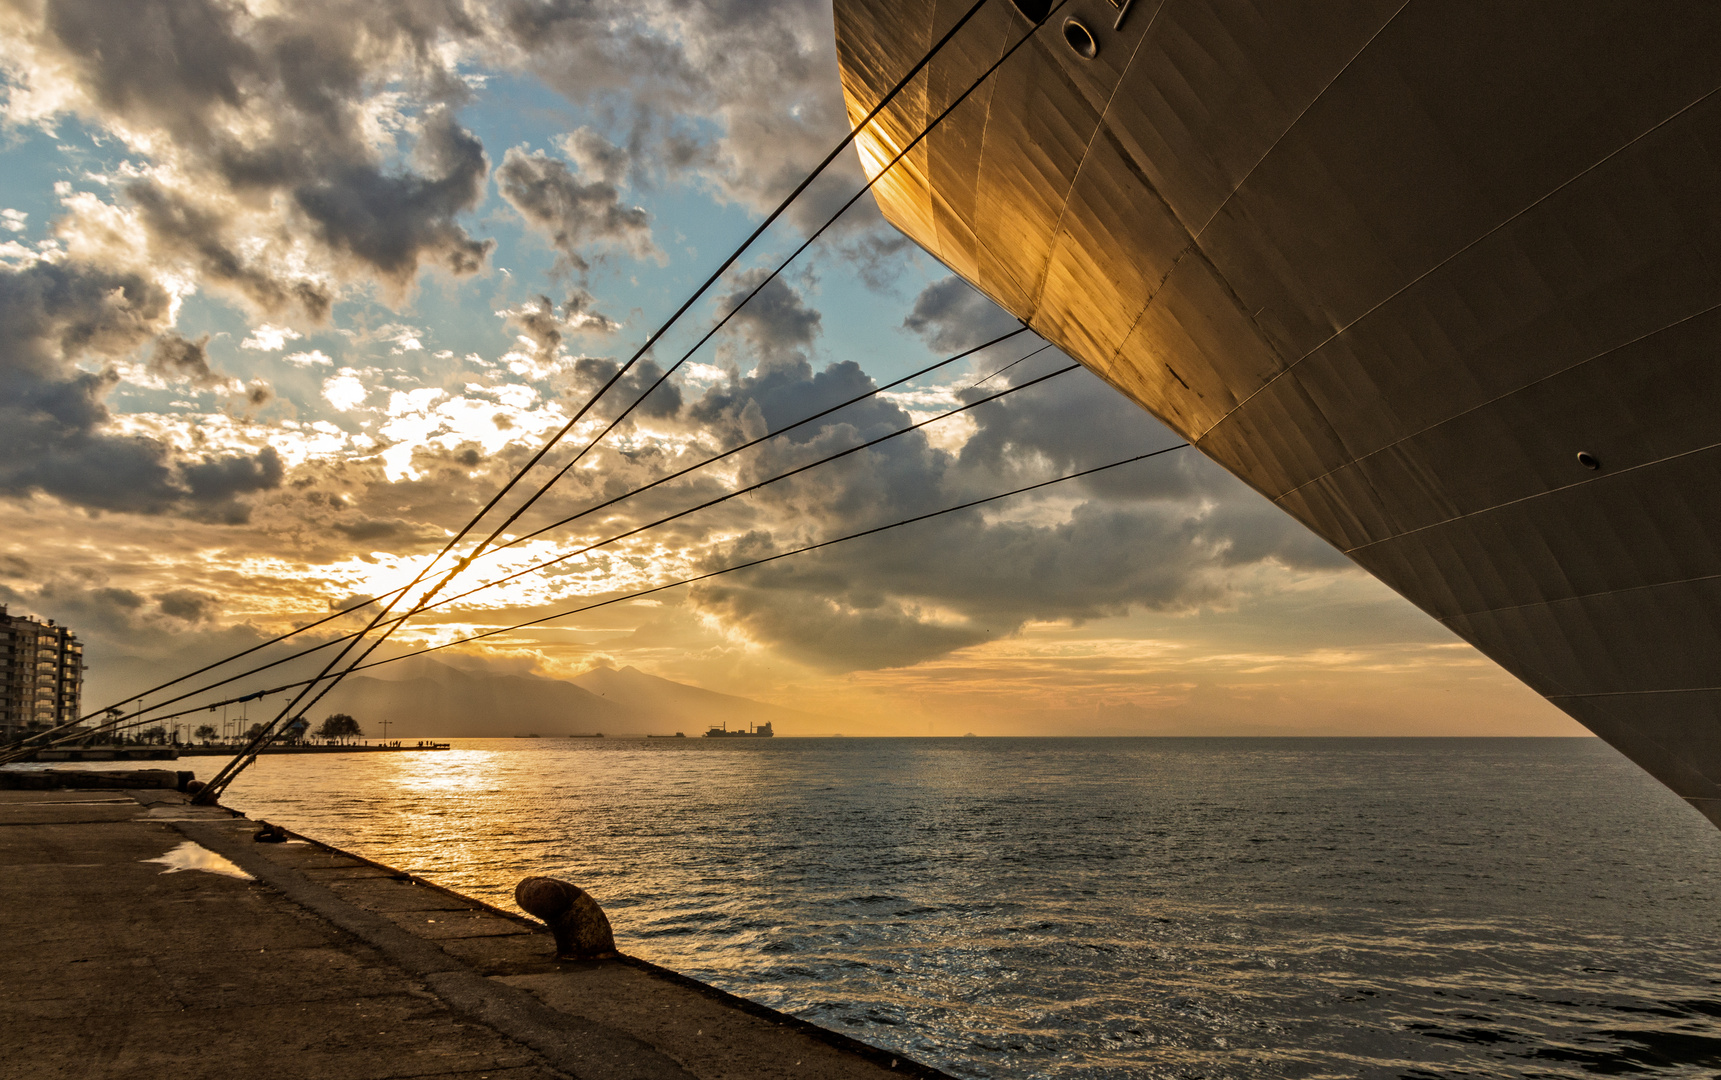 Sonnenuntergang im Hafen von Izmir